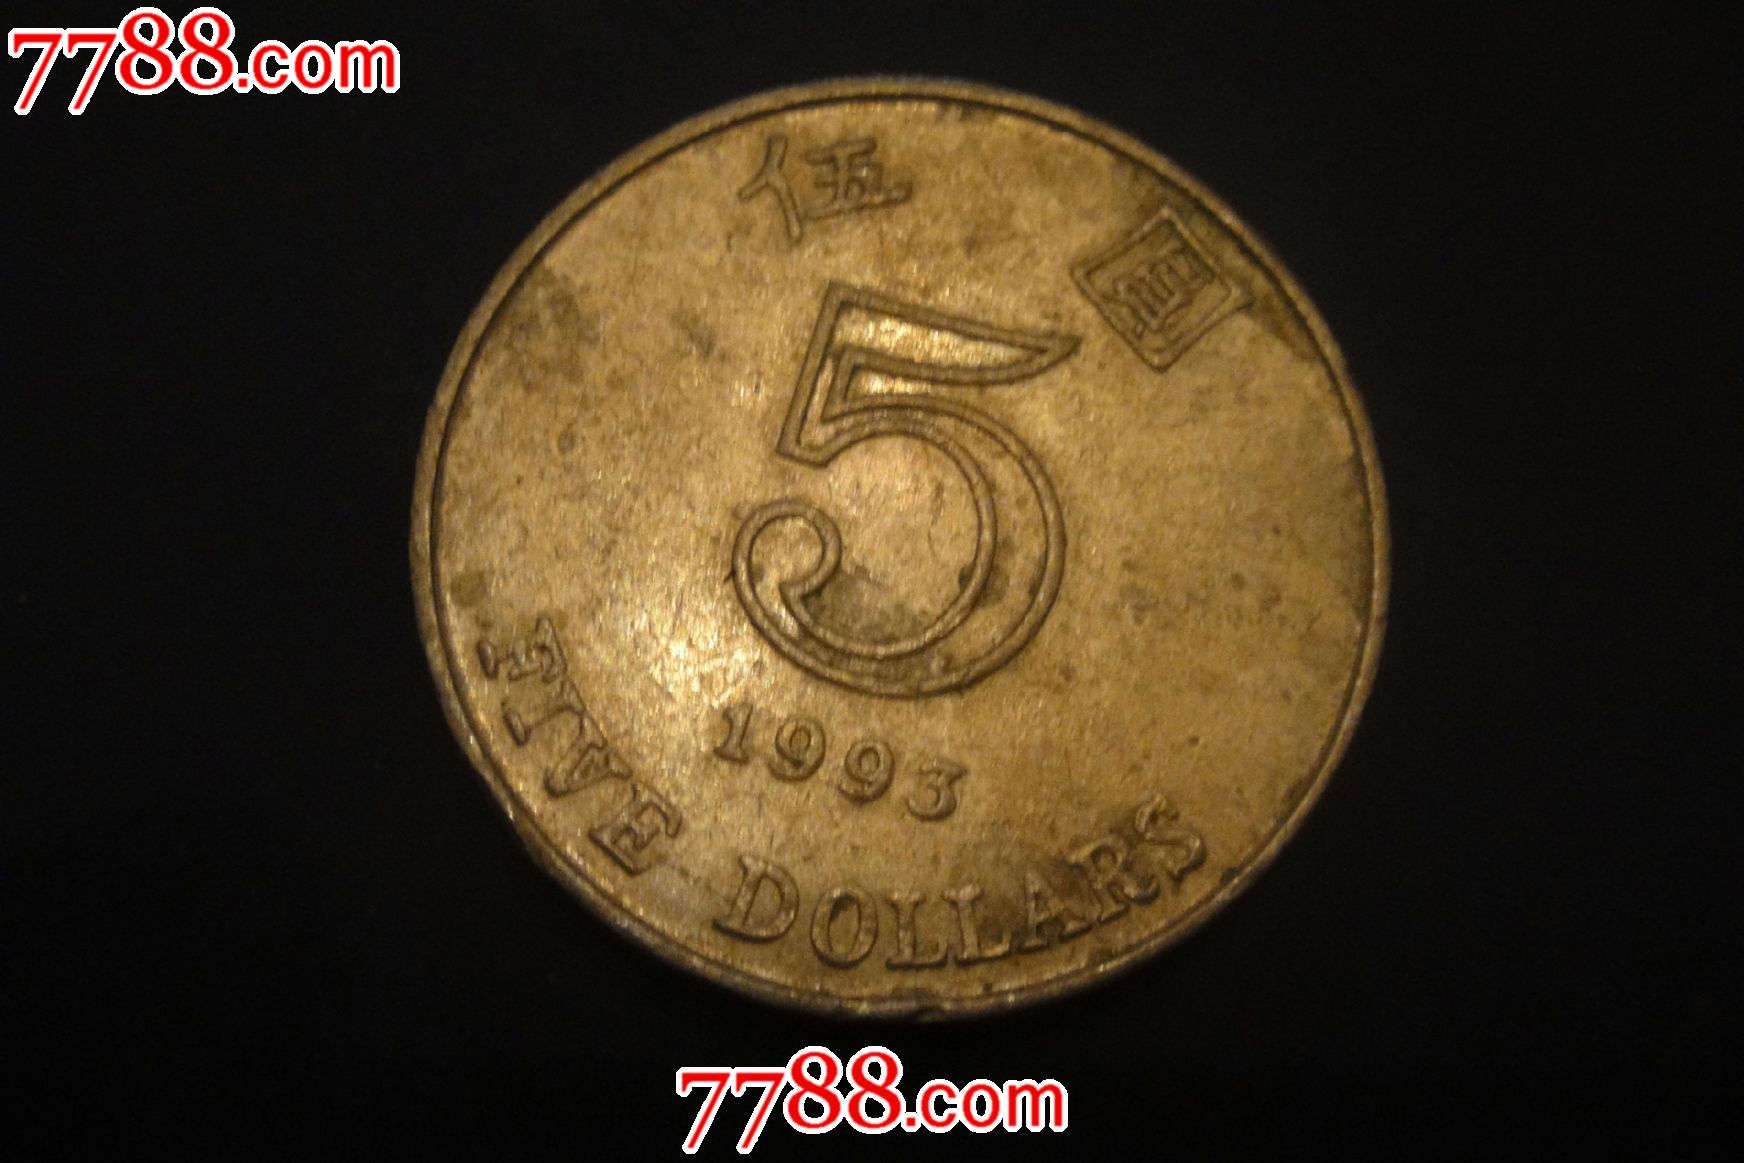 5元硬币1993年图片